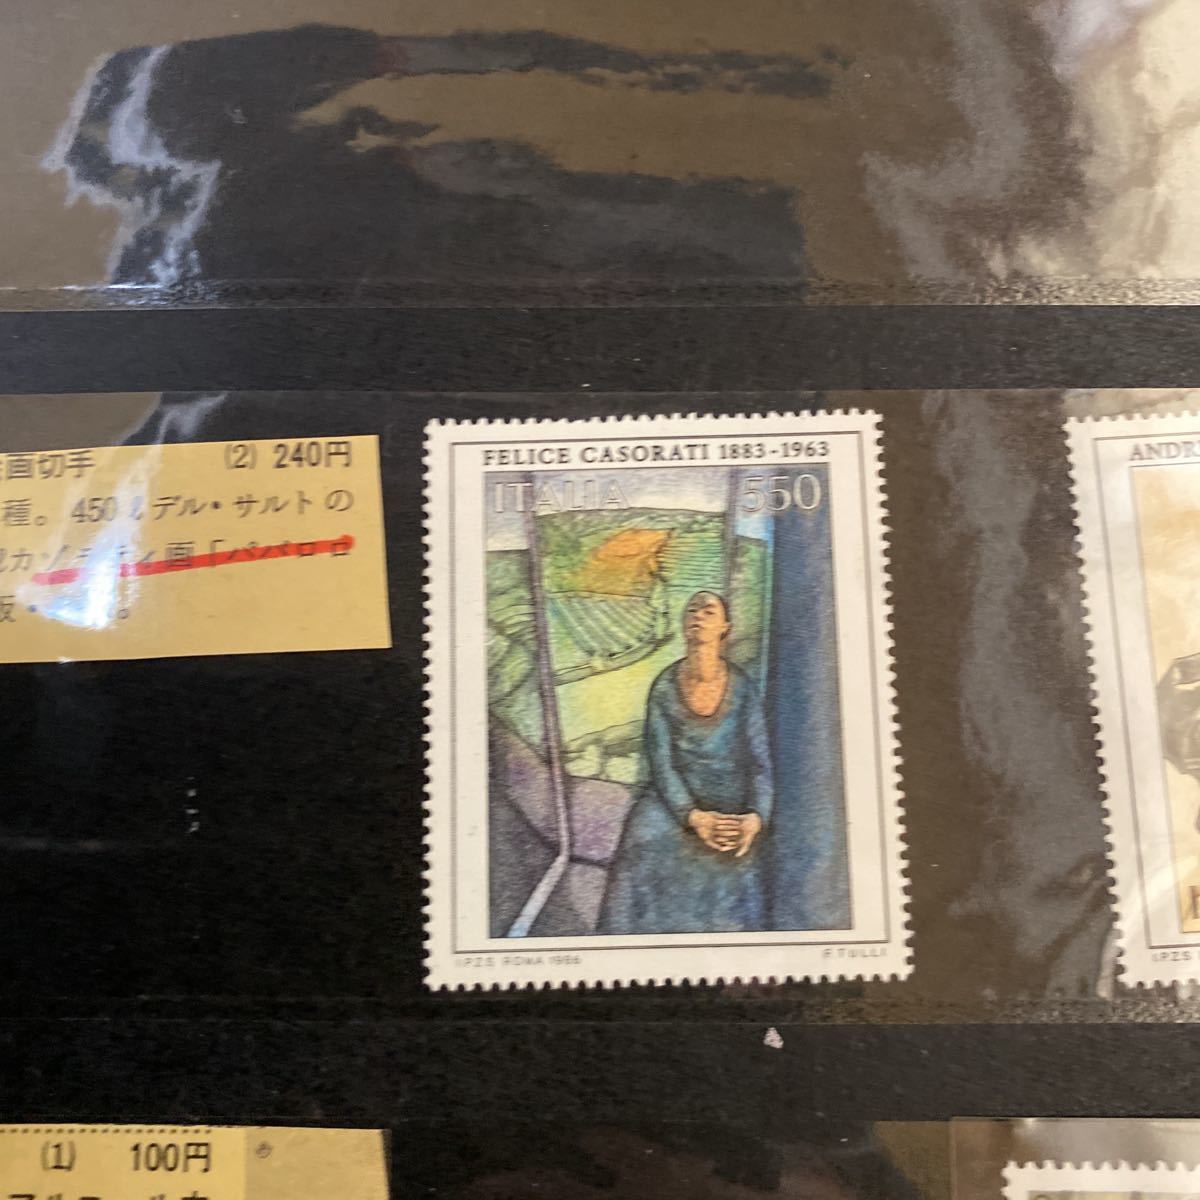 フランス 美術シリーズ・デュフィの絵画切手 未使用 1965 - コレクション